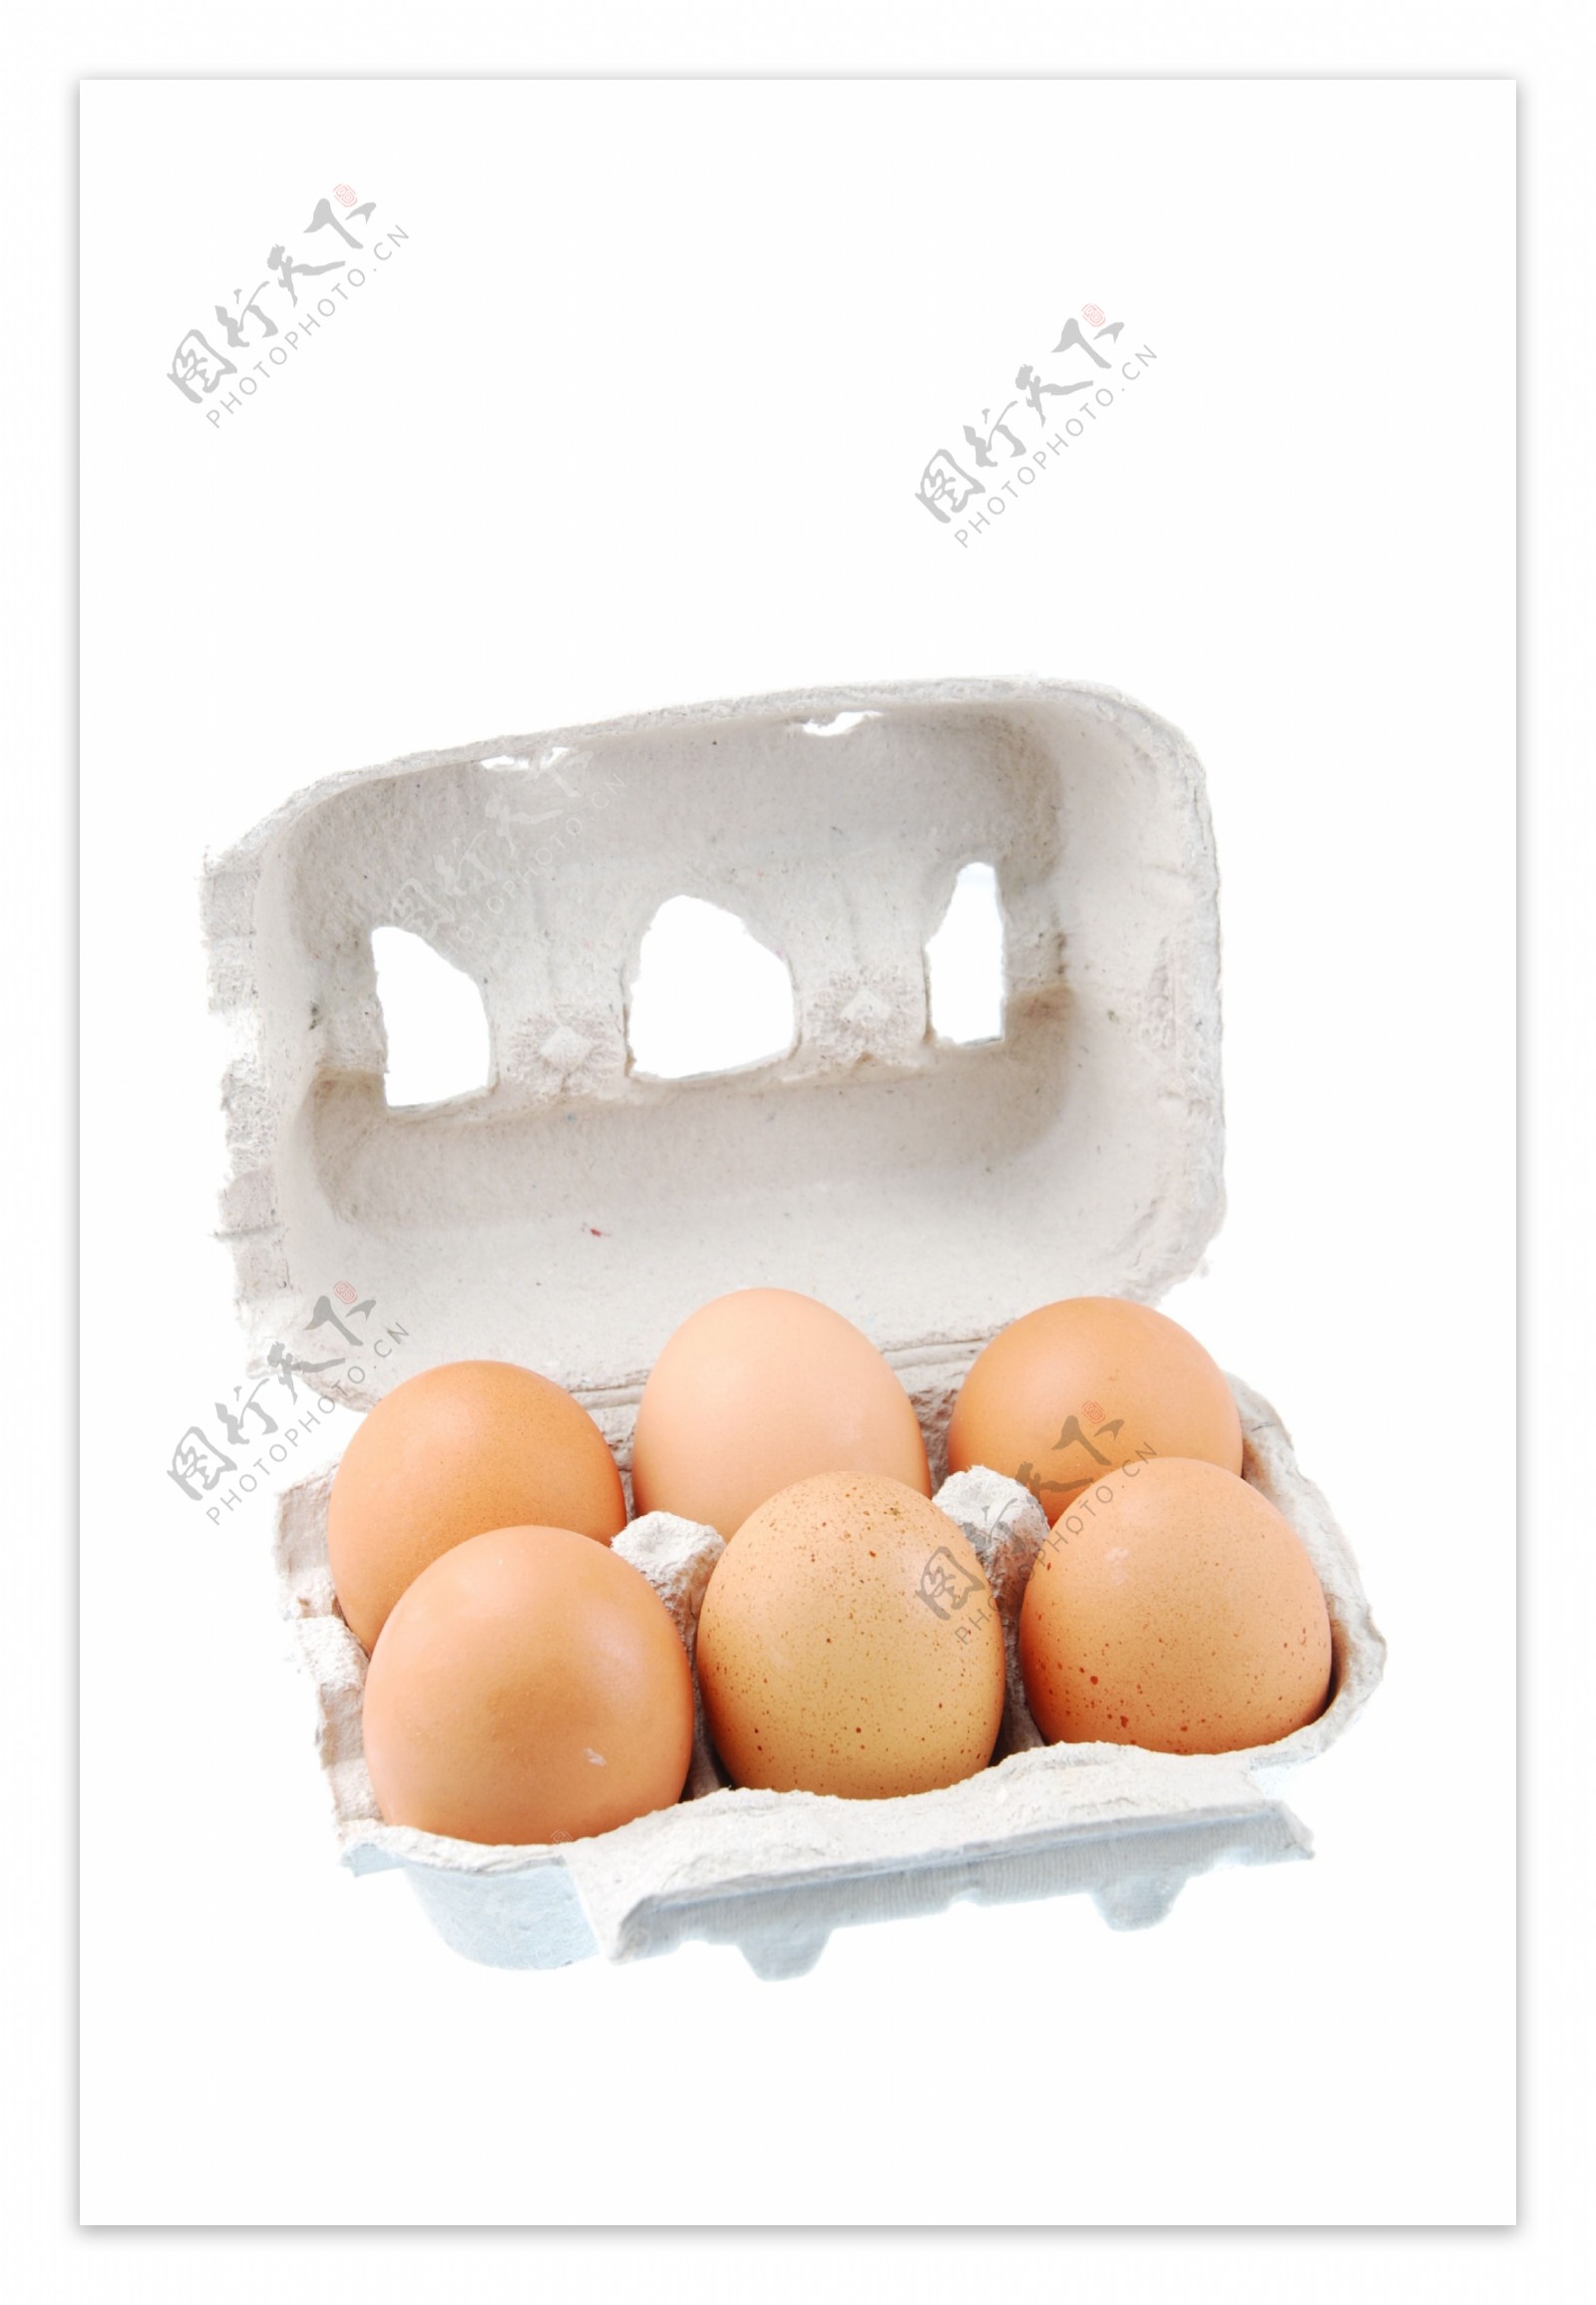 六棕色鸡蛋装在一个纸盒